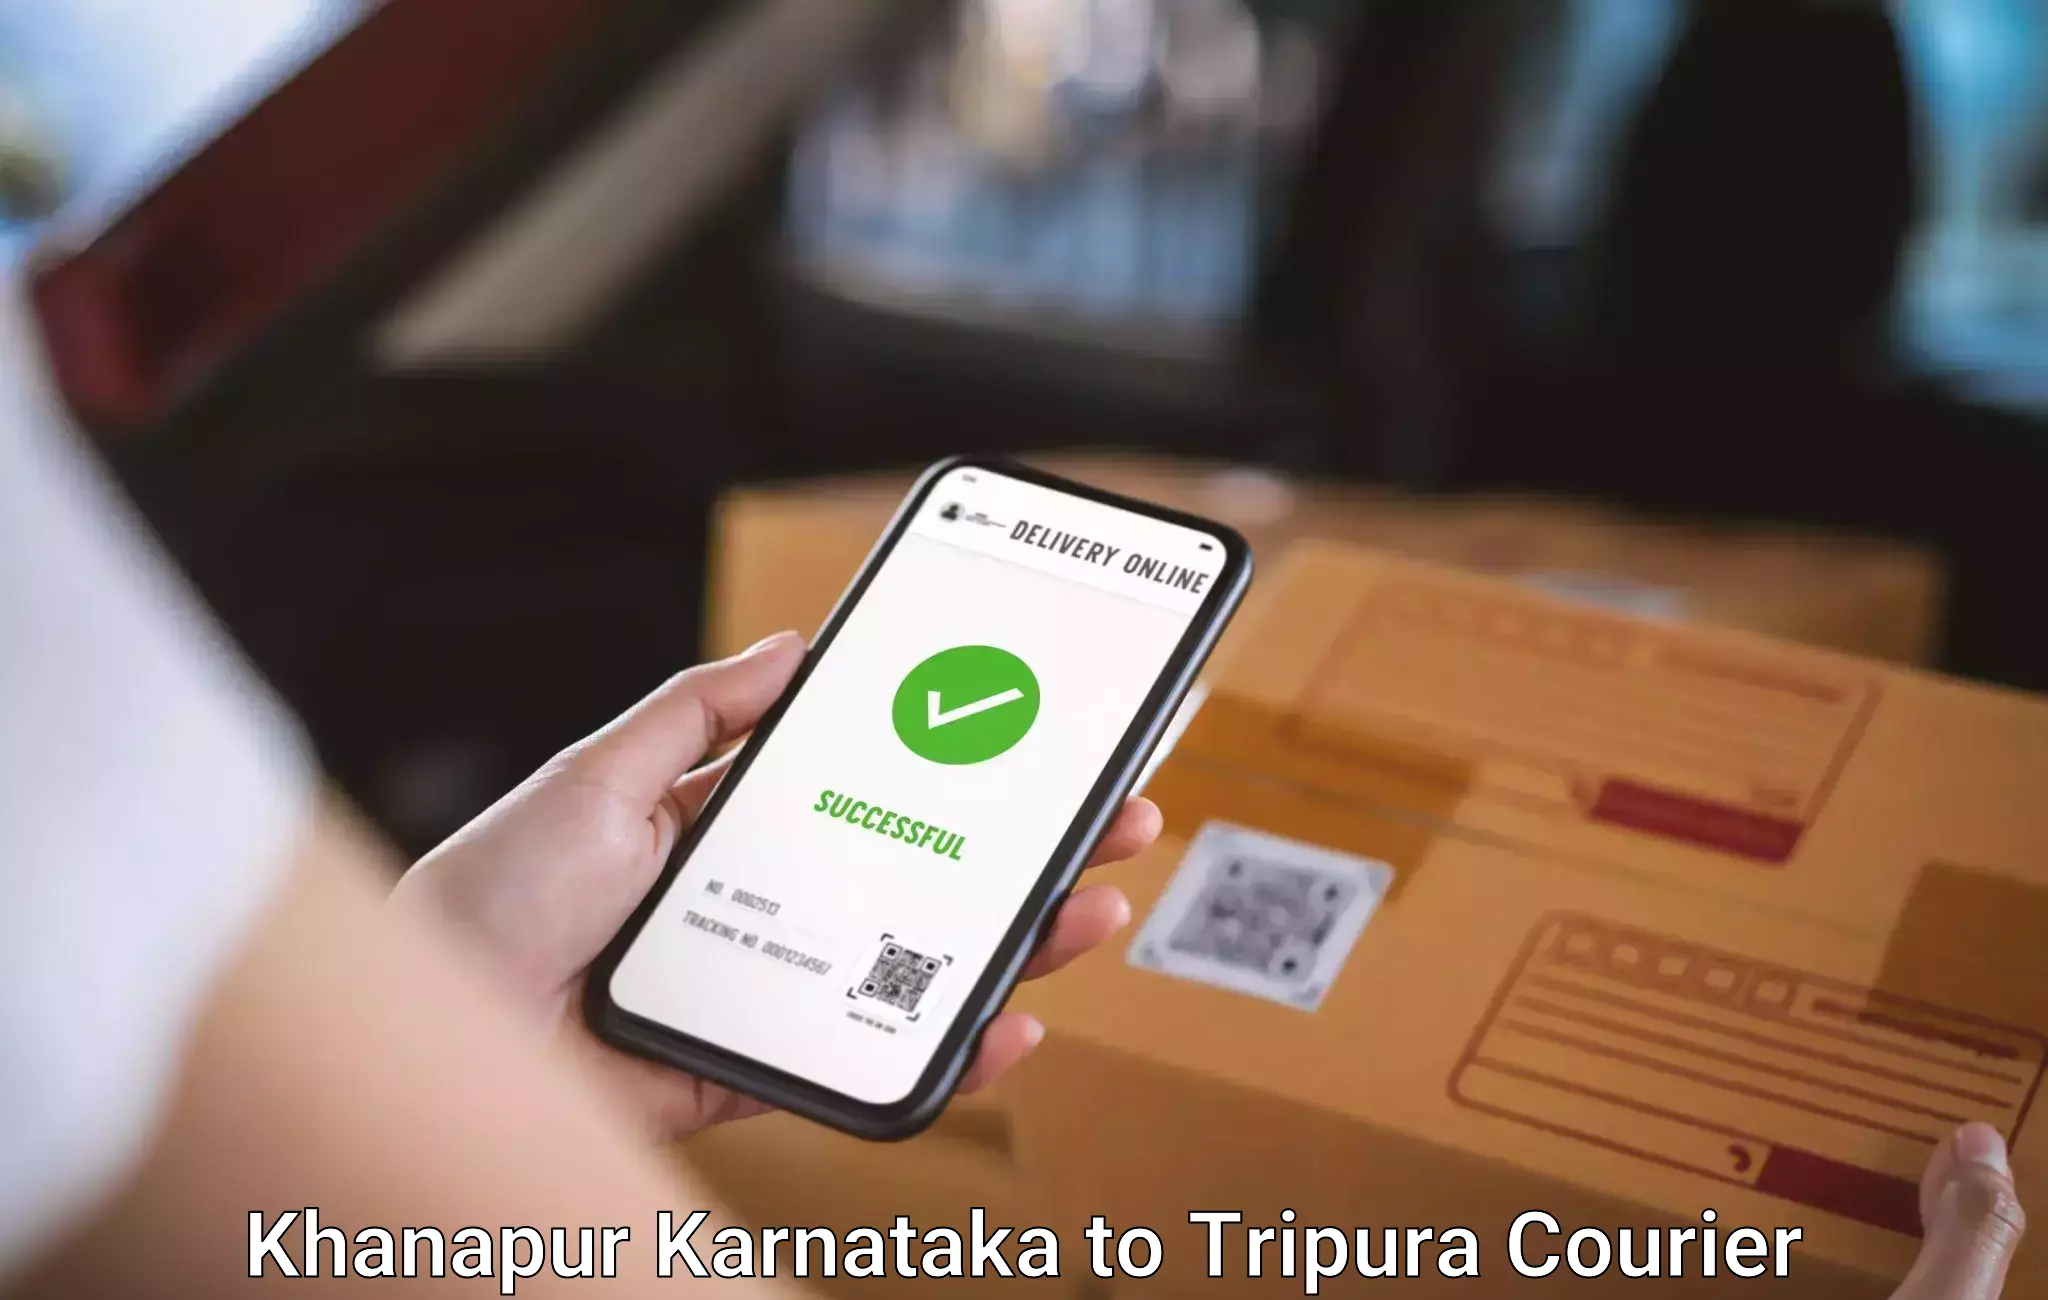 Luggage transfer service Khanapur Karnataka to Santirbazar